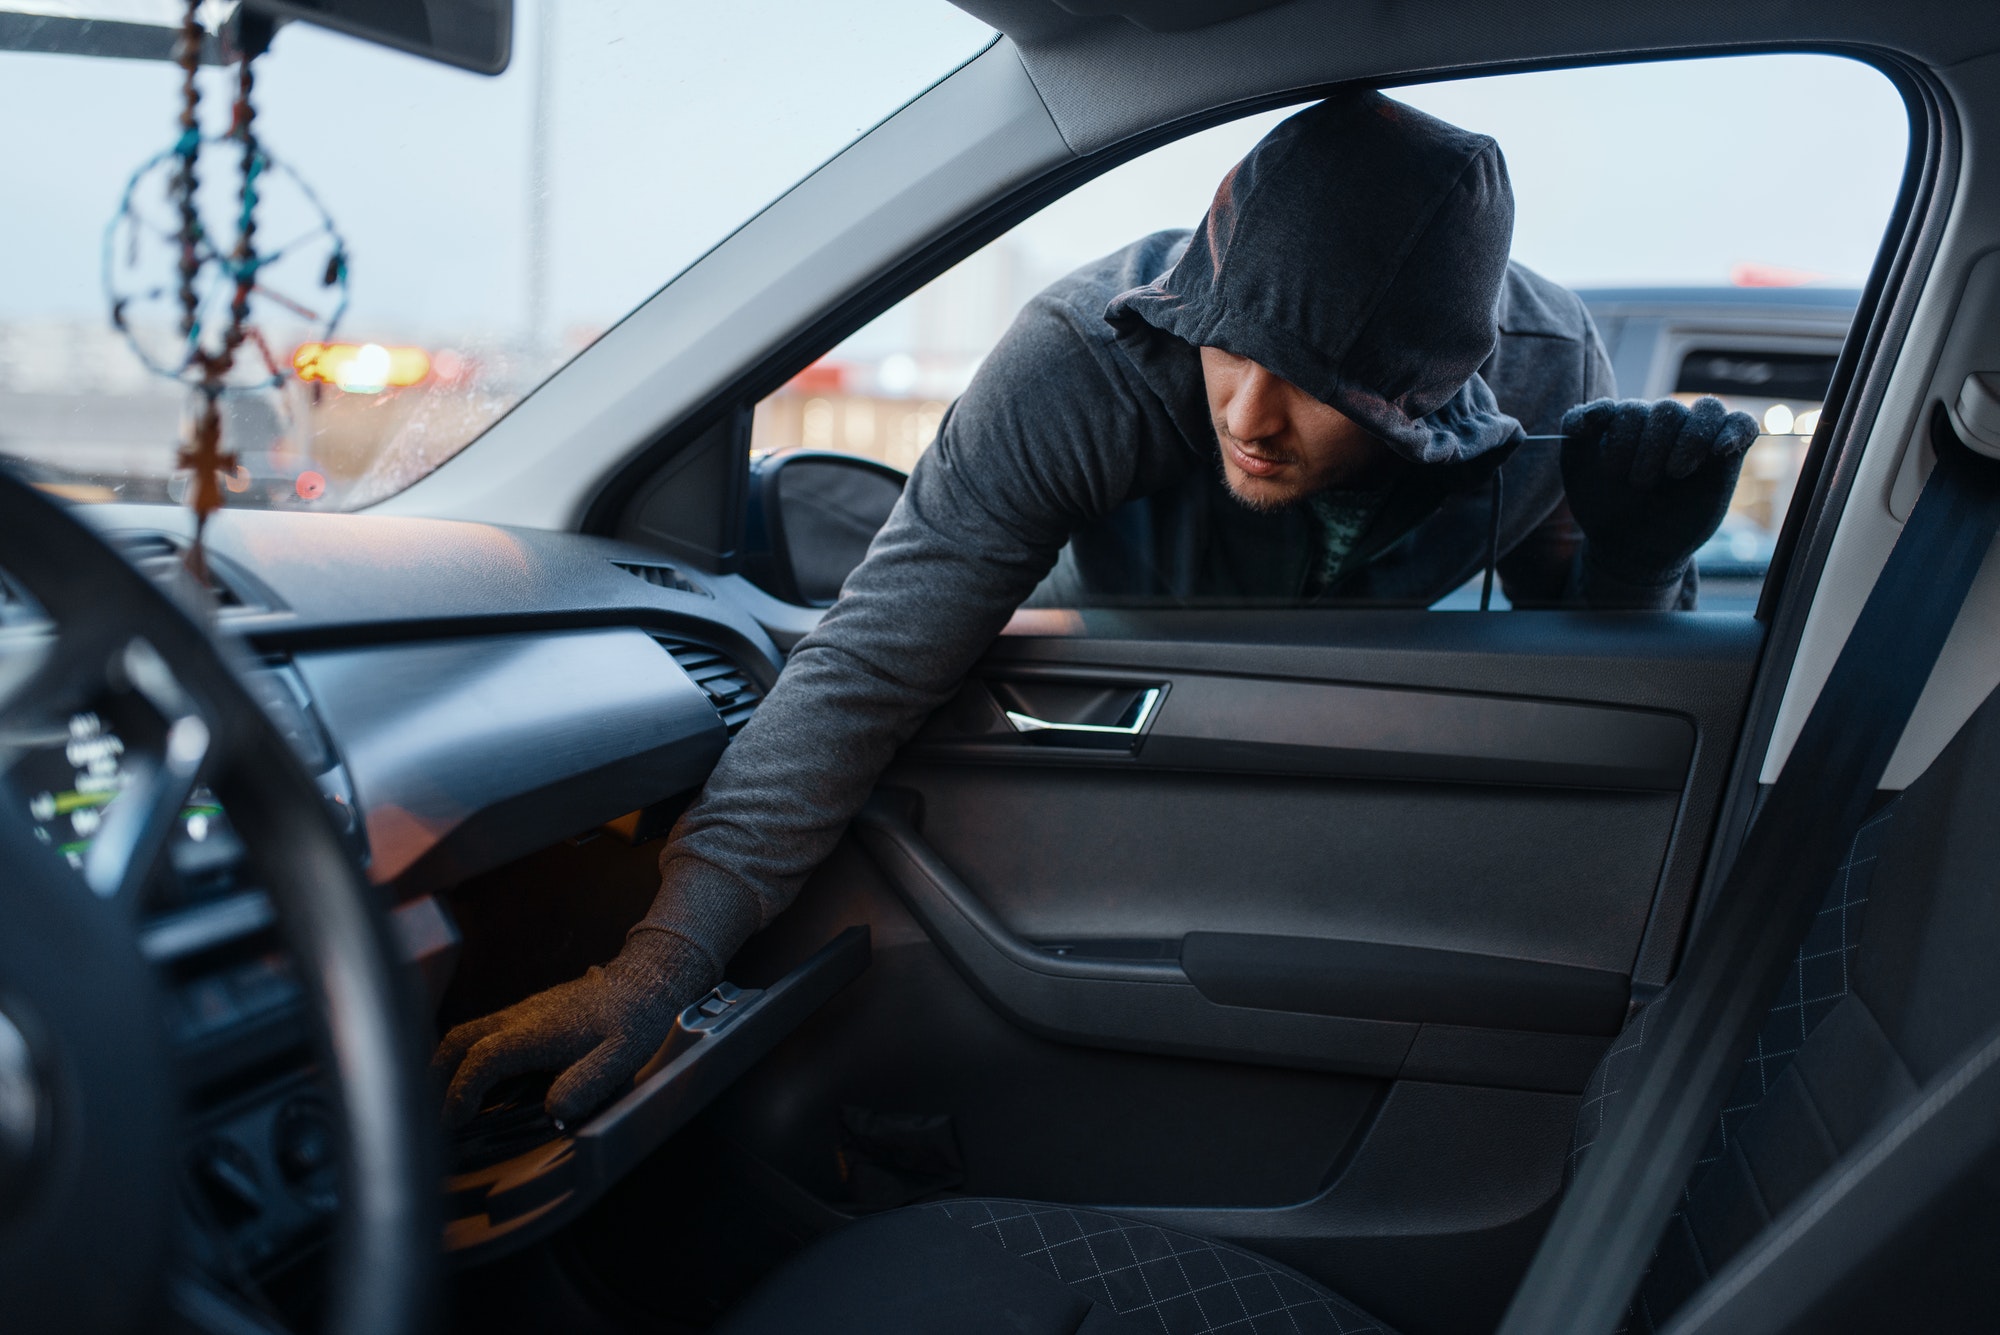 Car robber steals women's handbag, stealing